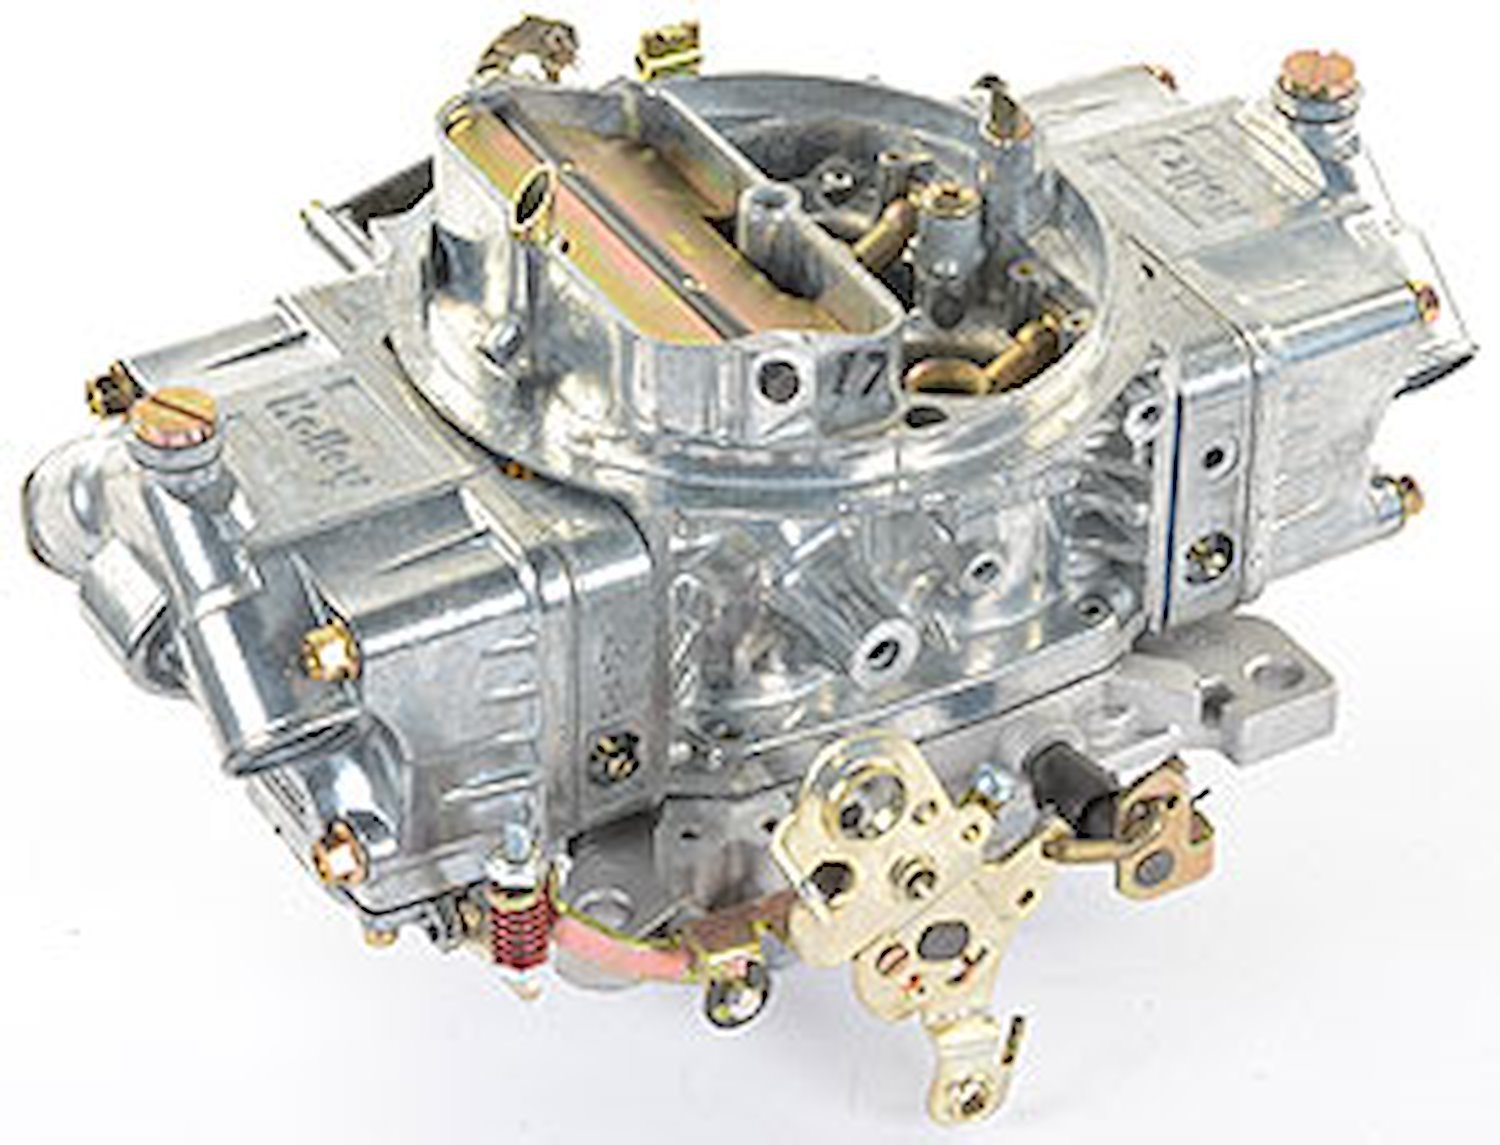 0-4781S Zinc-Coated Double Pumper Carburetor 850 cfm